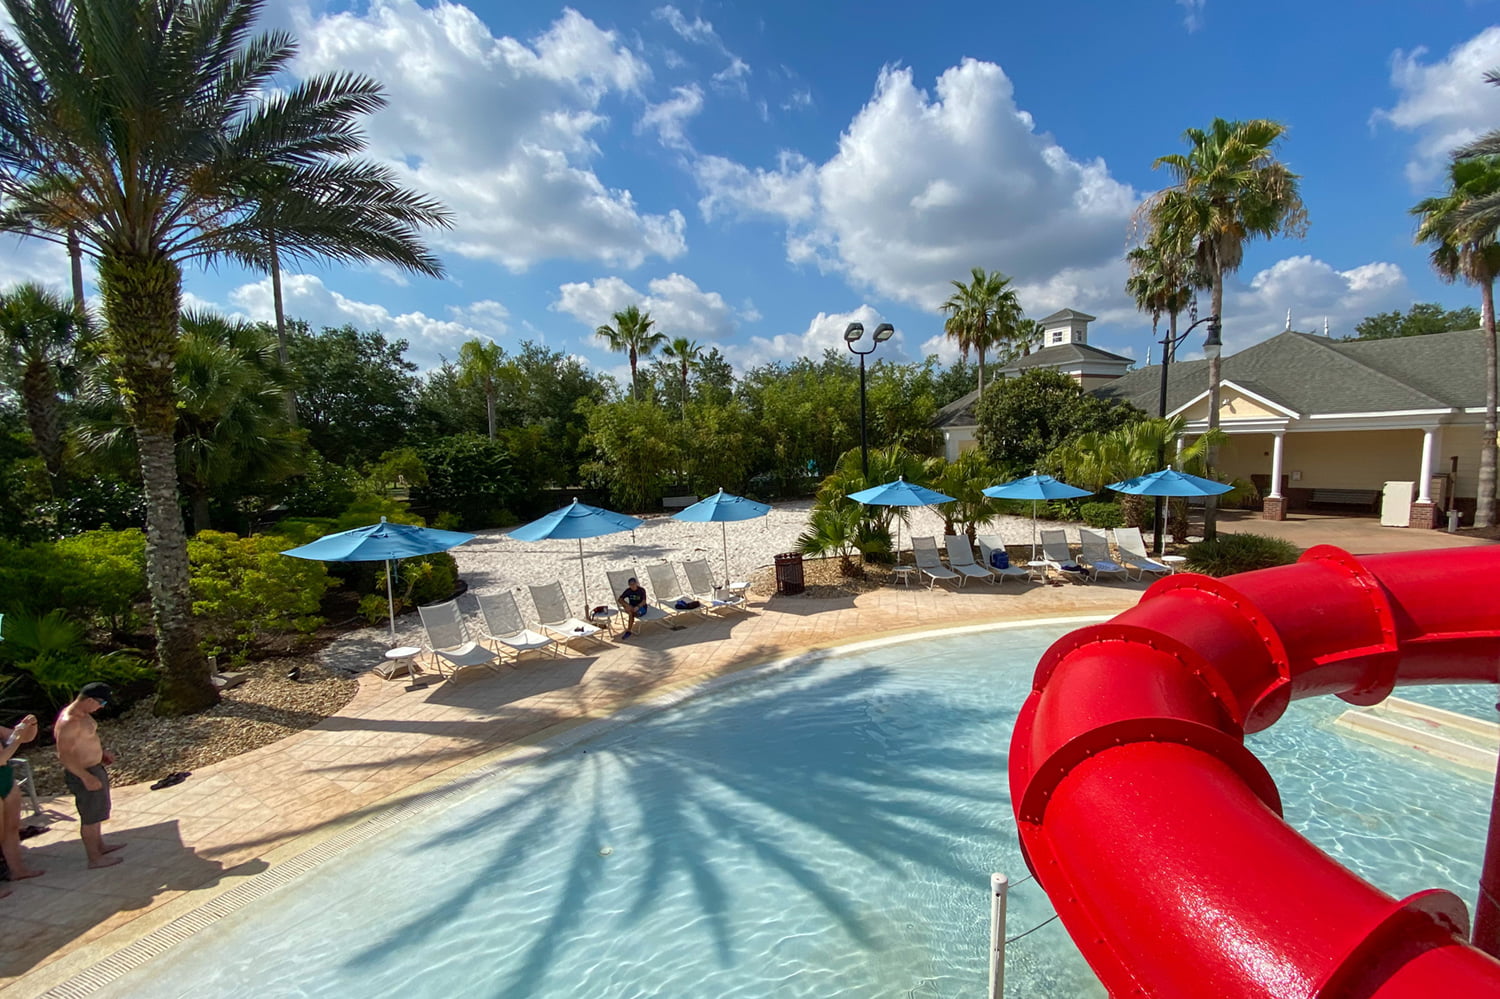 Long Weekend Getaway to Orlando at Reunion Resort